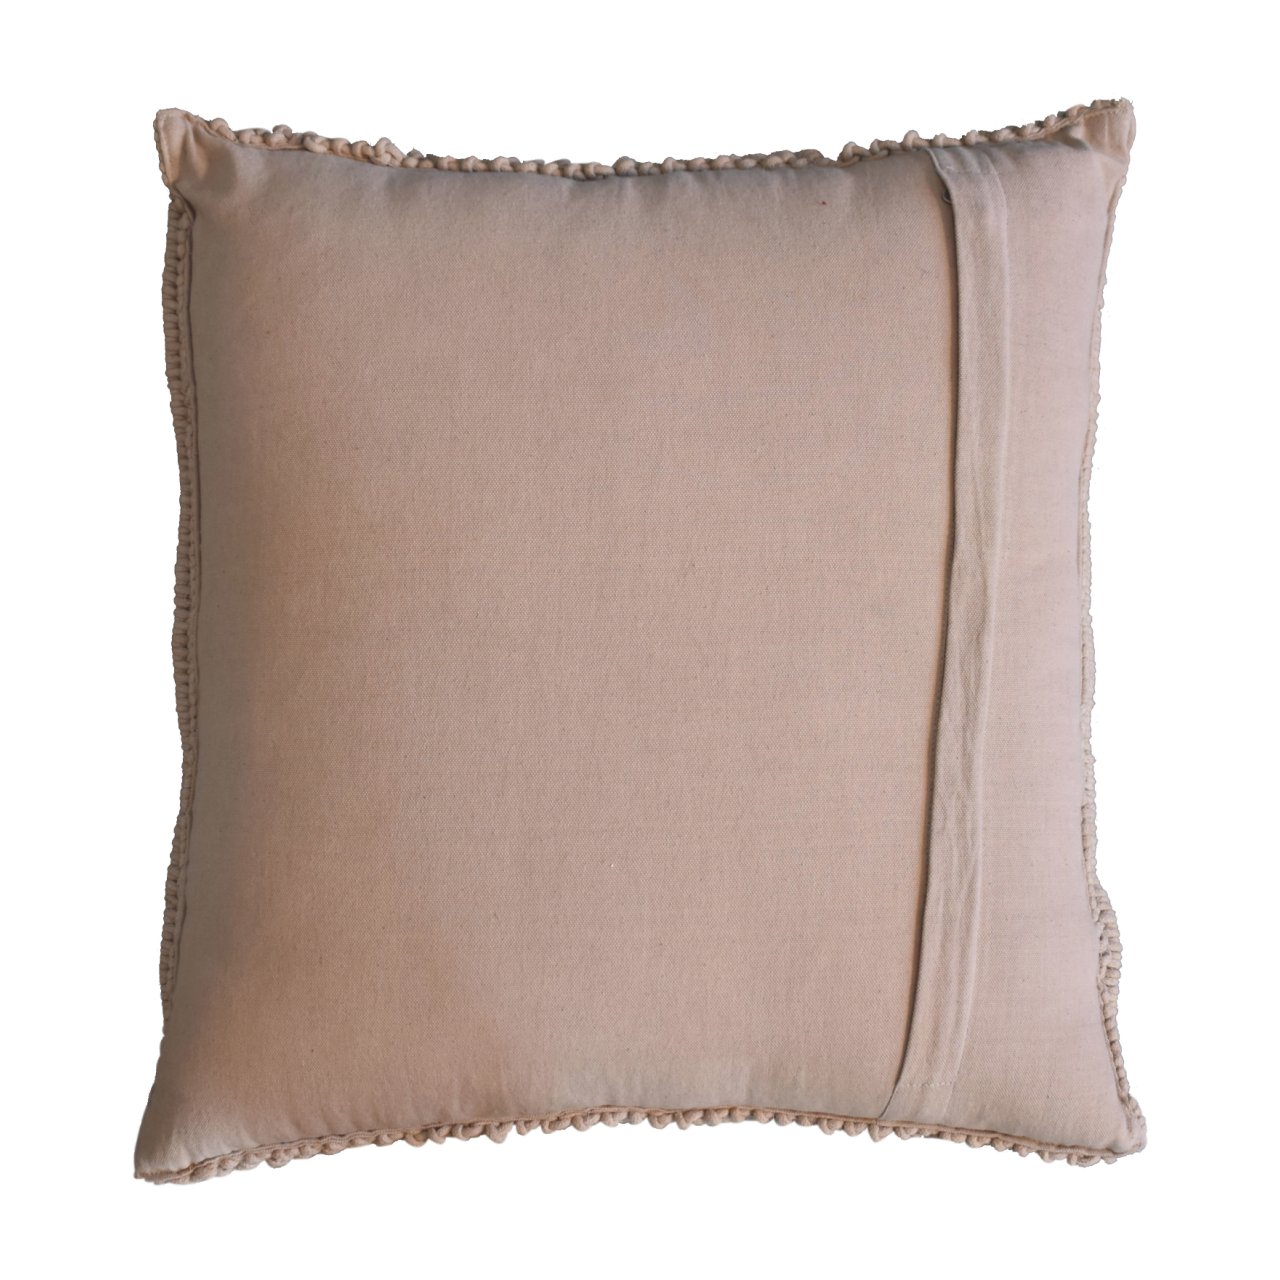 Alda Cushion Set of 2 - Cream